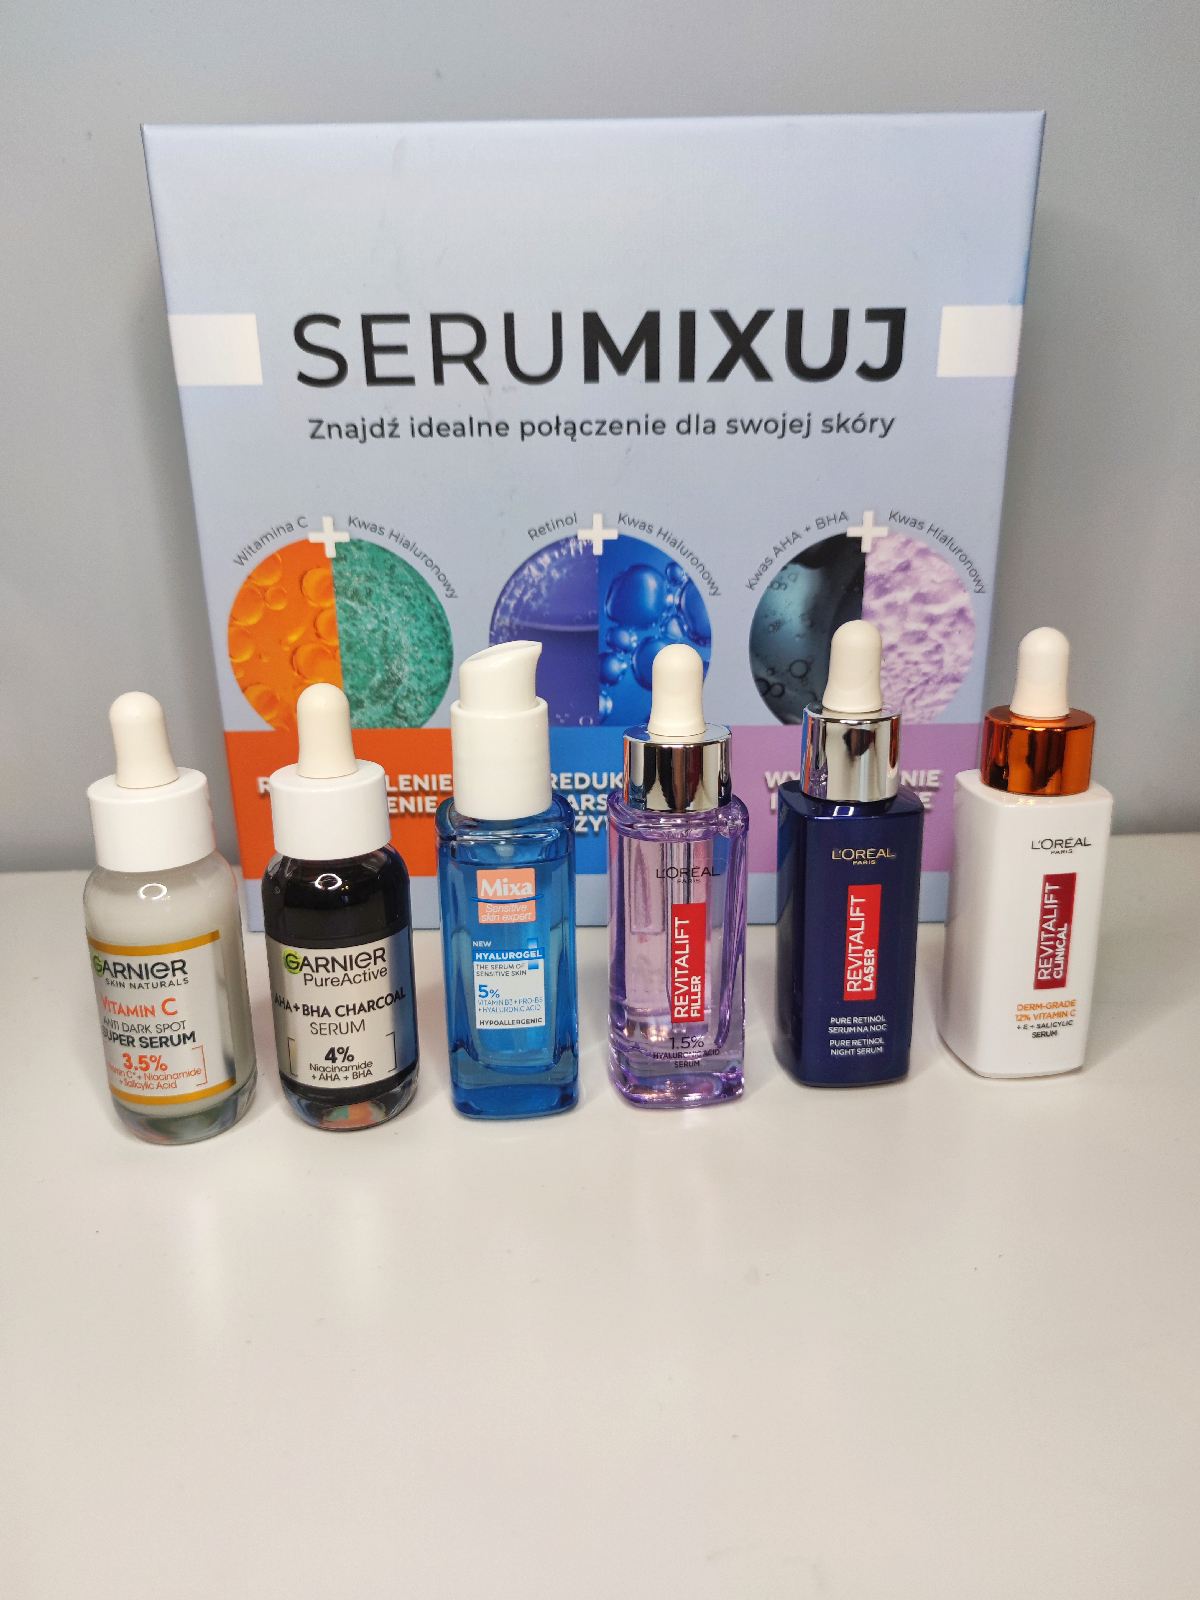 SERUMIXUJ - Znajdź idealne połączenie dla swojej skóry - serum za darmo - tylko w drogeriach Rossmann 